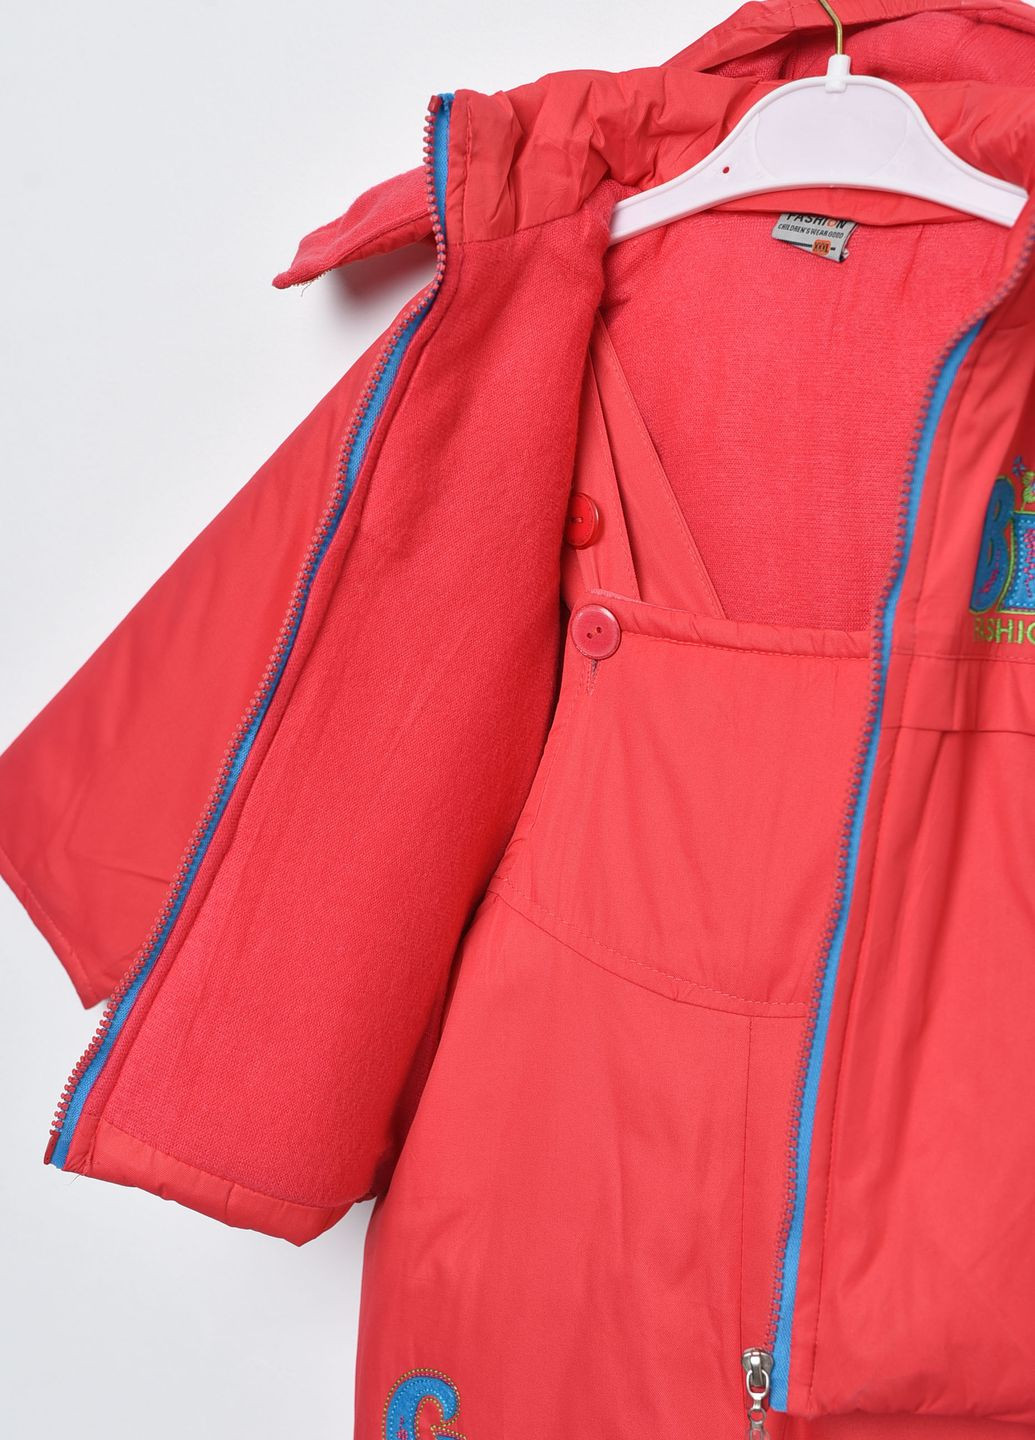 Темно-розовая зимняя куртка и полукомбинезон детский для девочки еврозима темно-розового цвета Let's Shop